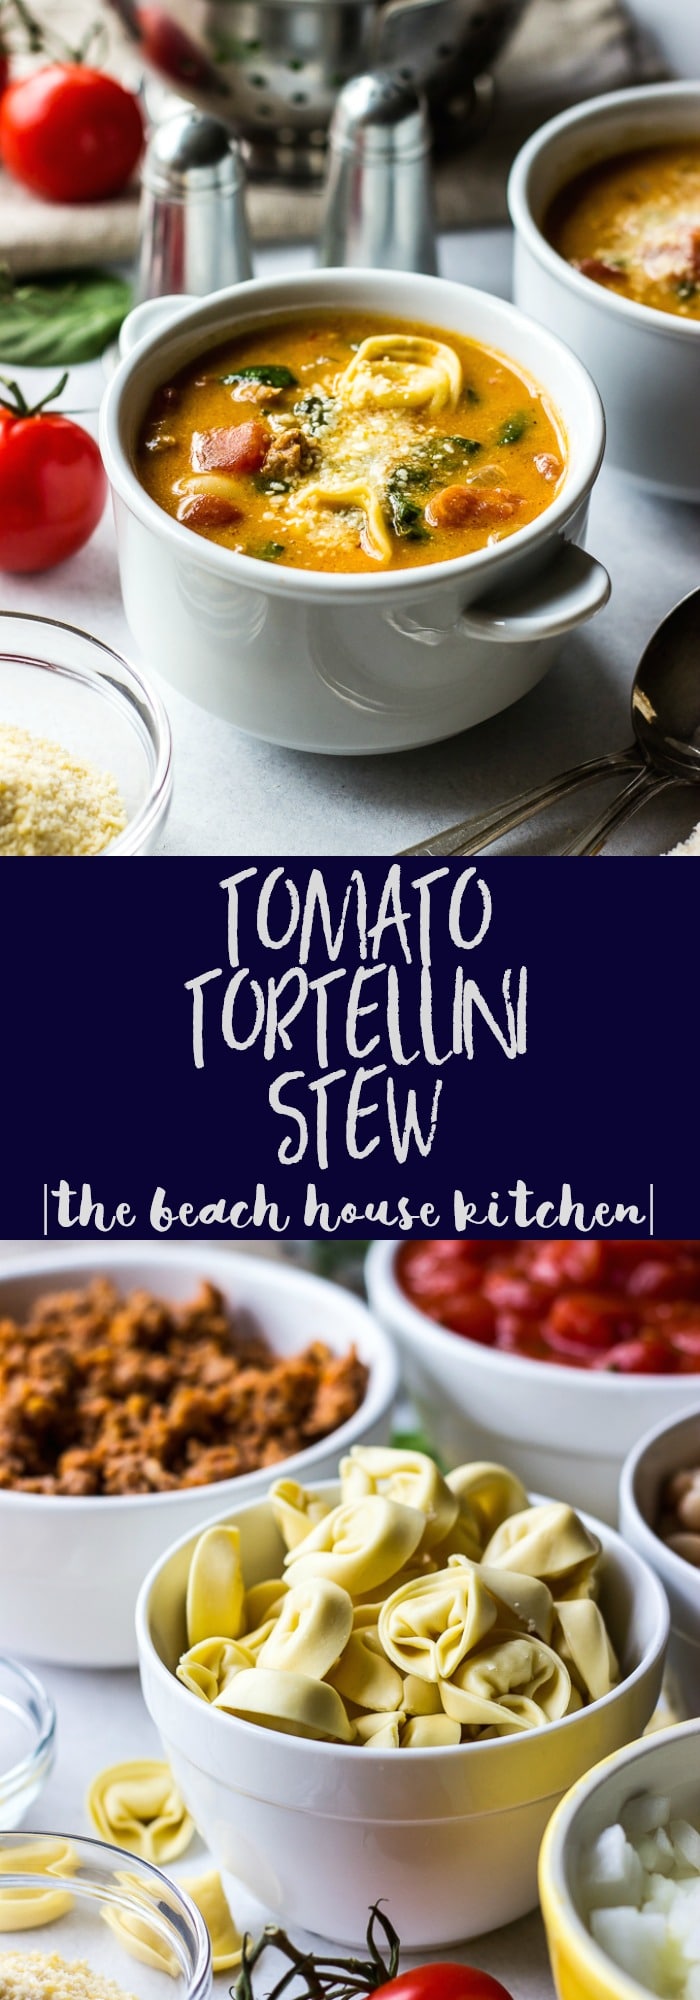 Tomato Tortellini Stew